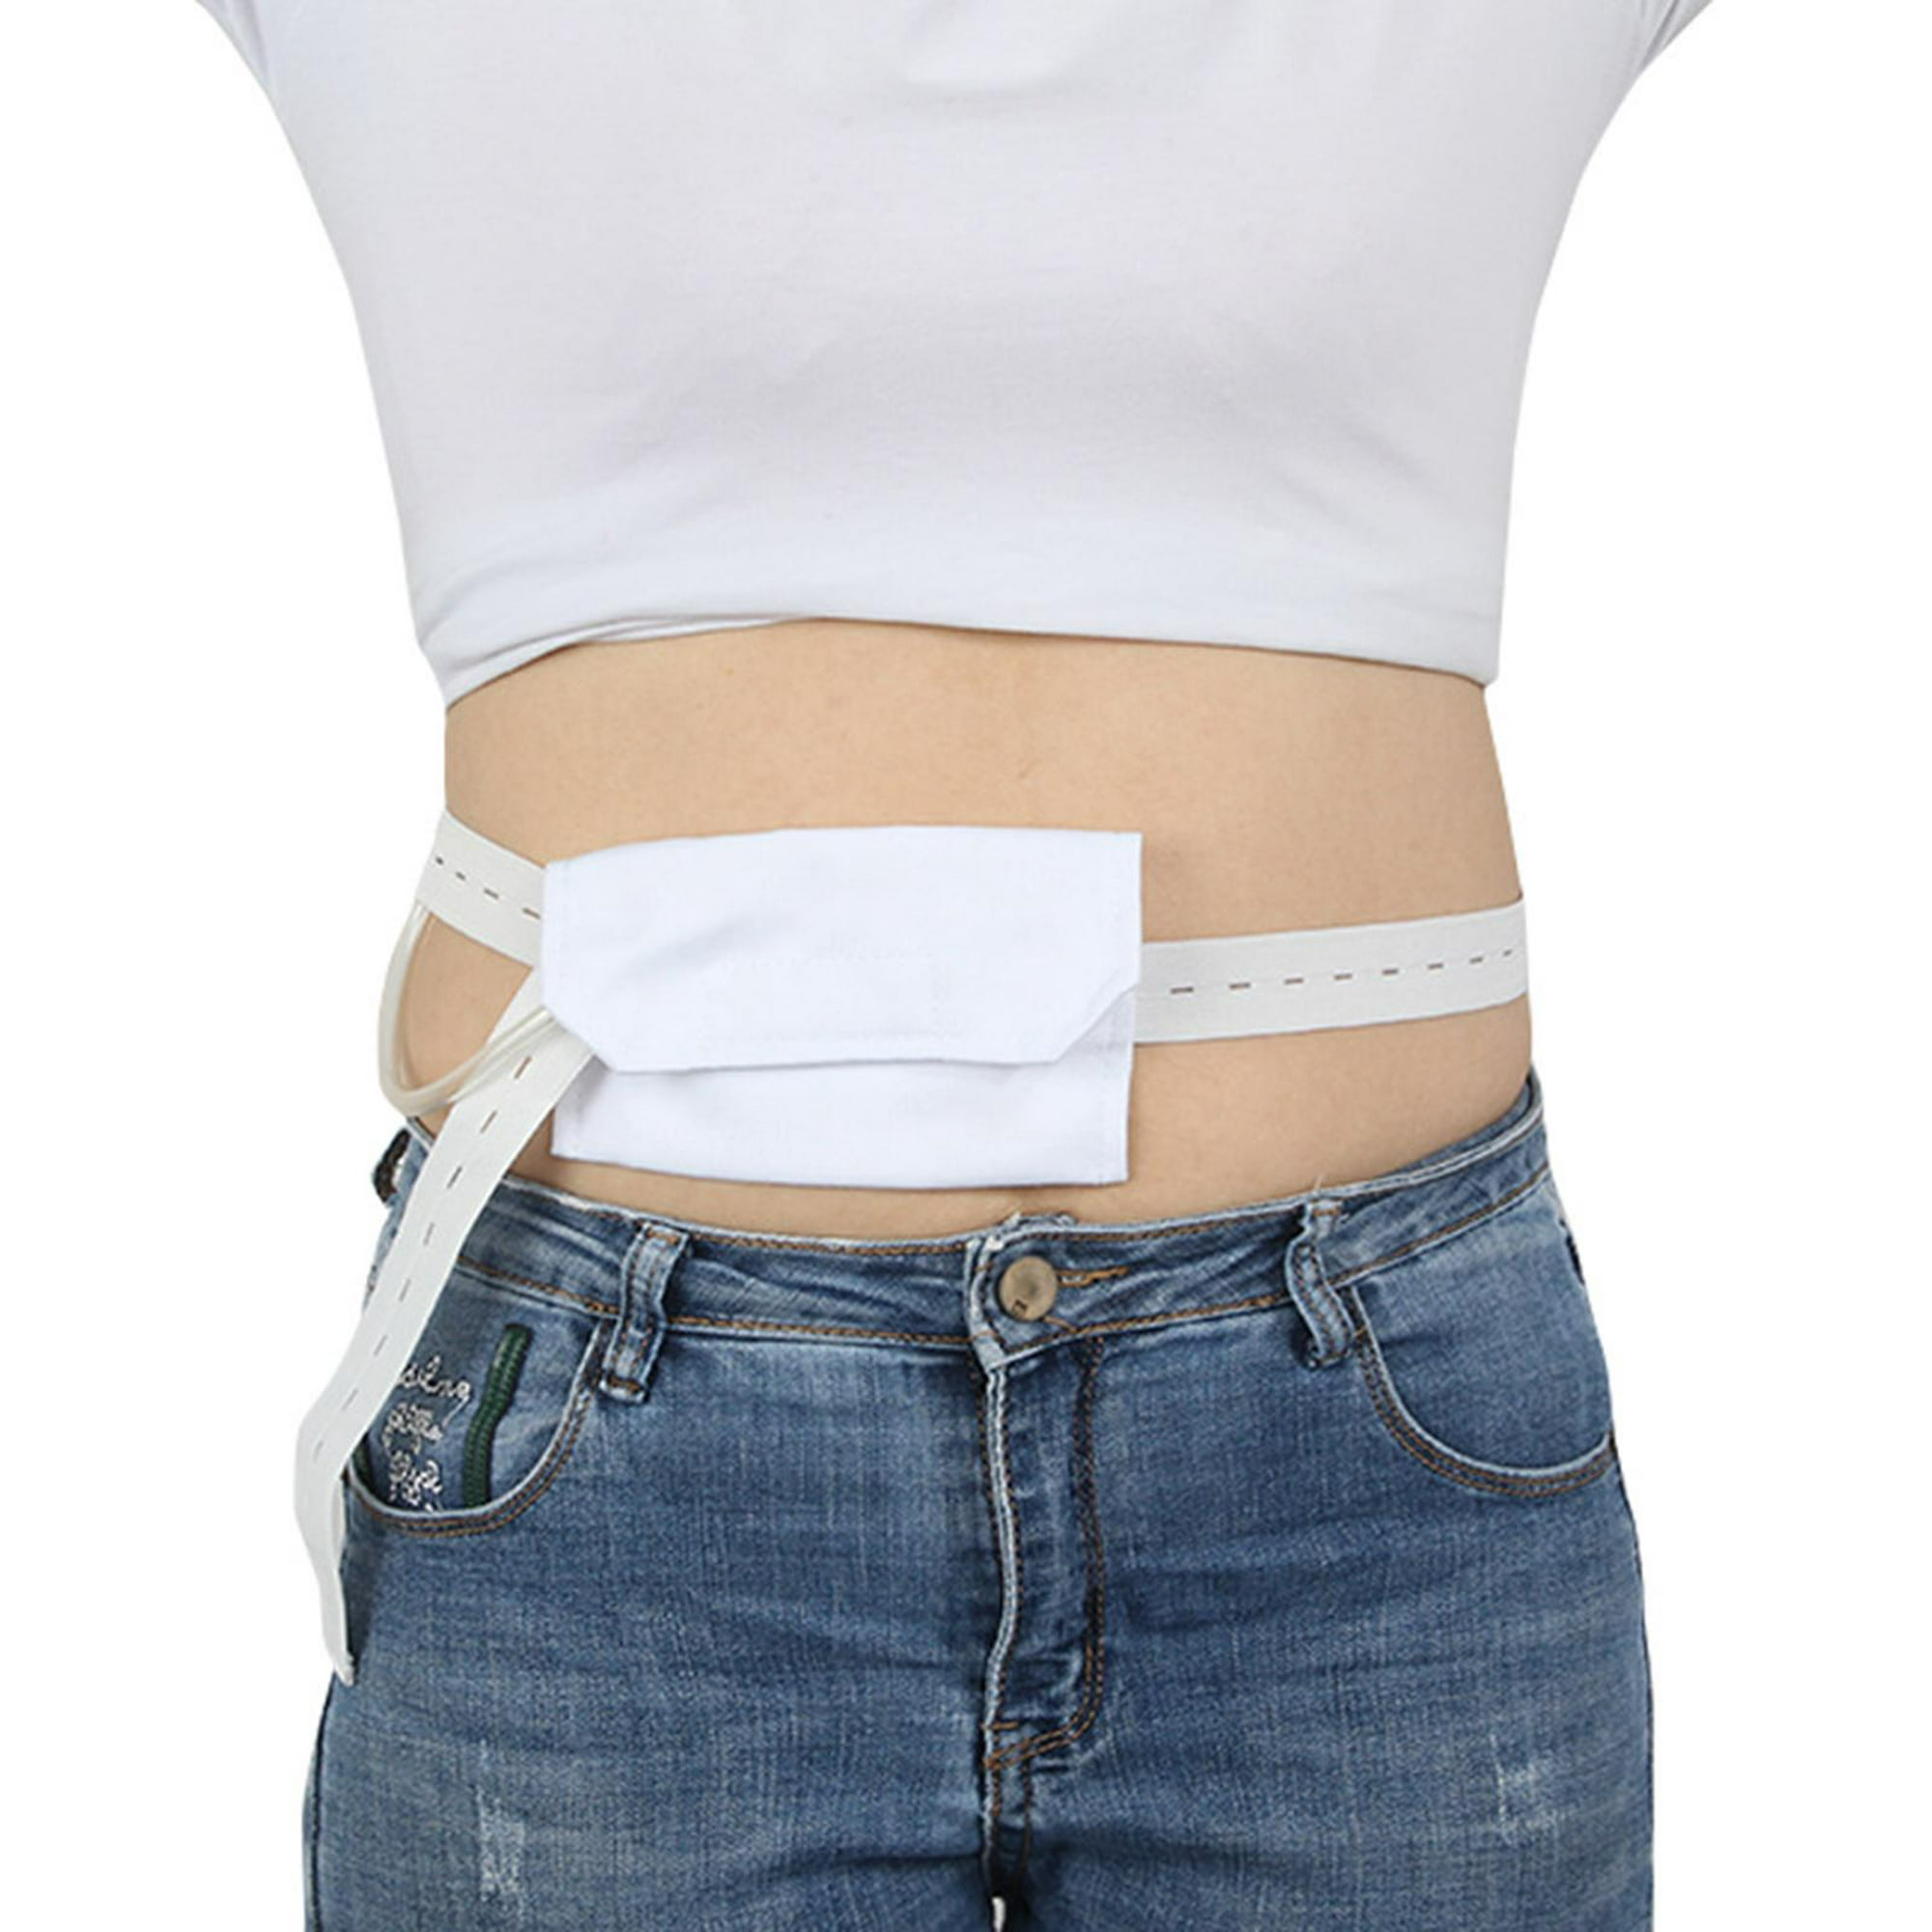 Cinturón de soporte para Hernia Abdominal, colostomía ajustable, soporte de  cinturo lavable, soporte Colcomx Cinturón de diálisis abdominal